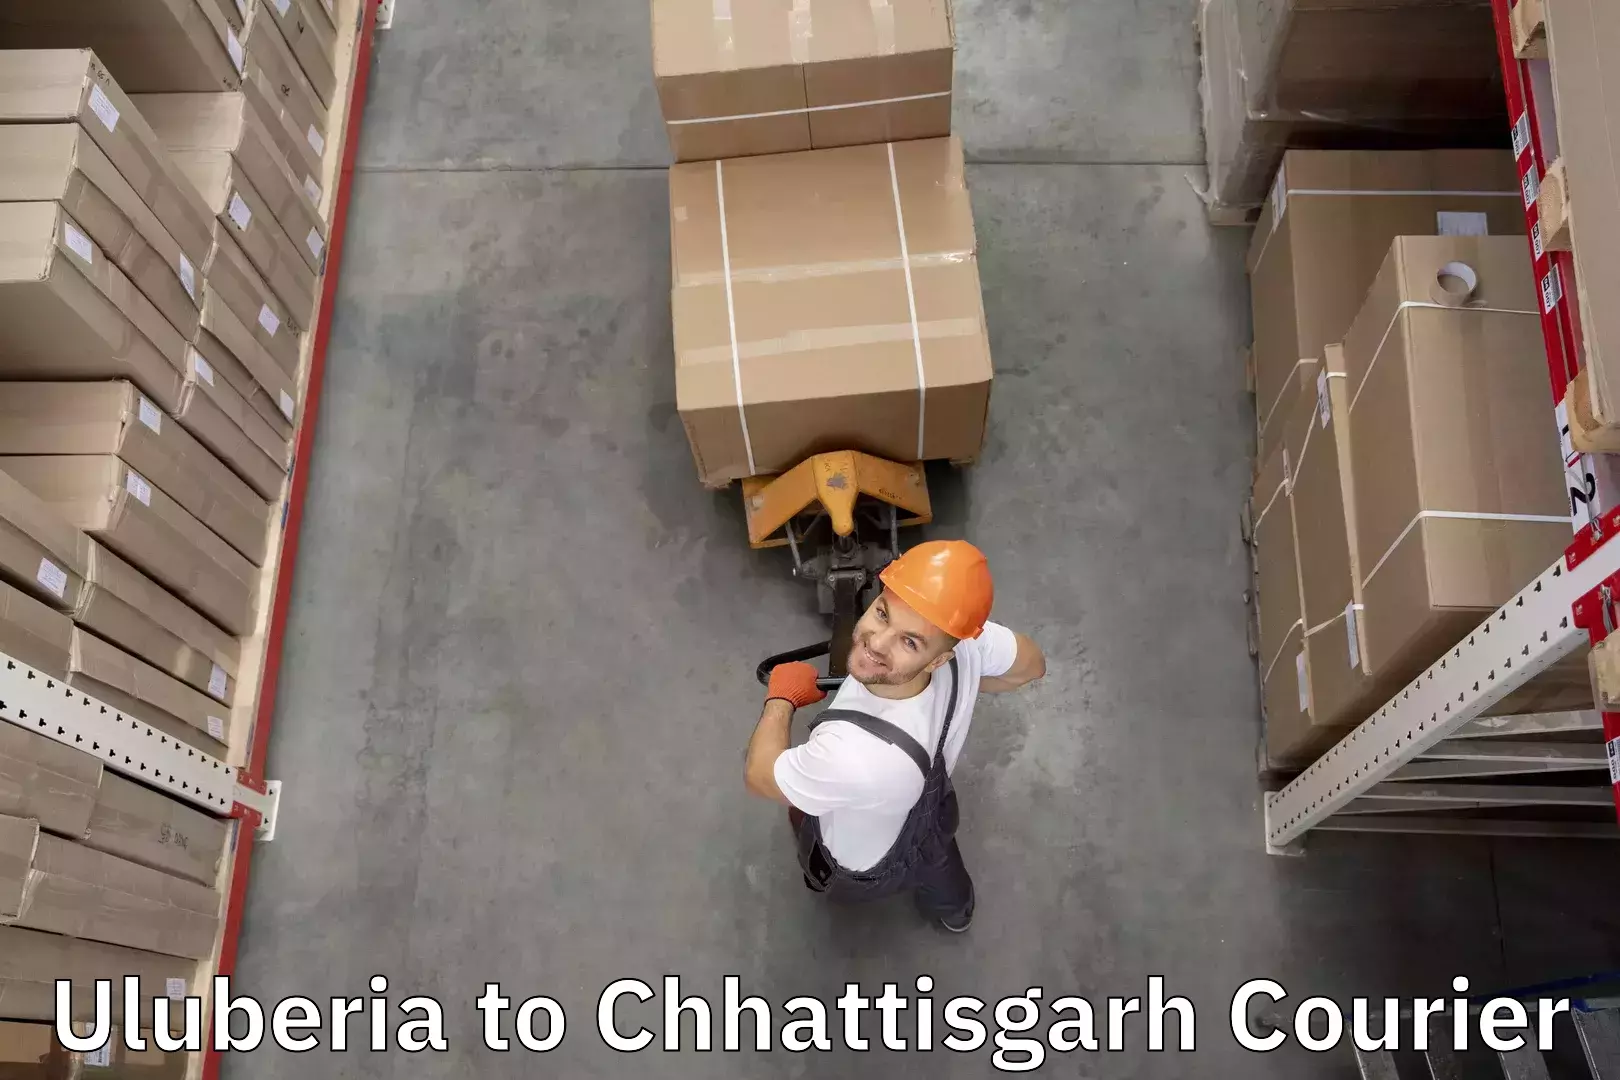 Luggage delivery estimate Uluberia to Patna Chhattisgarh